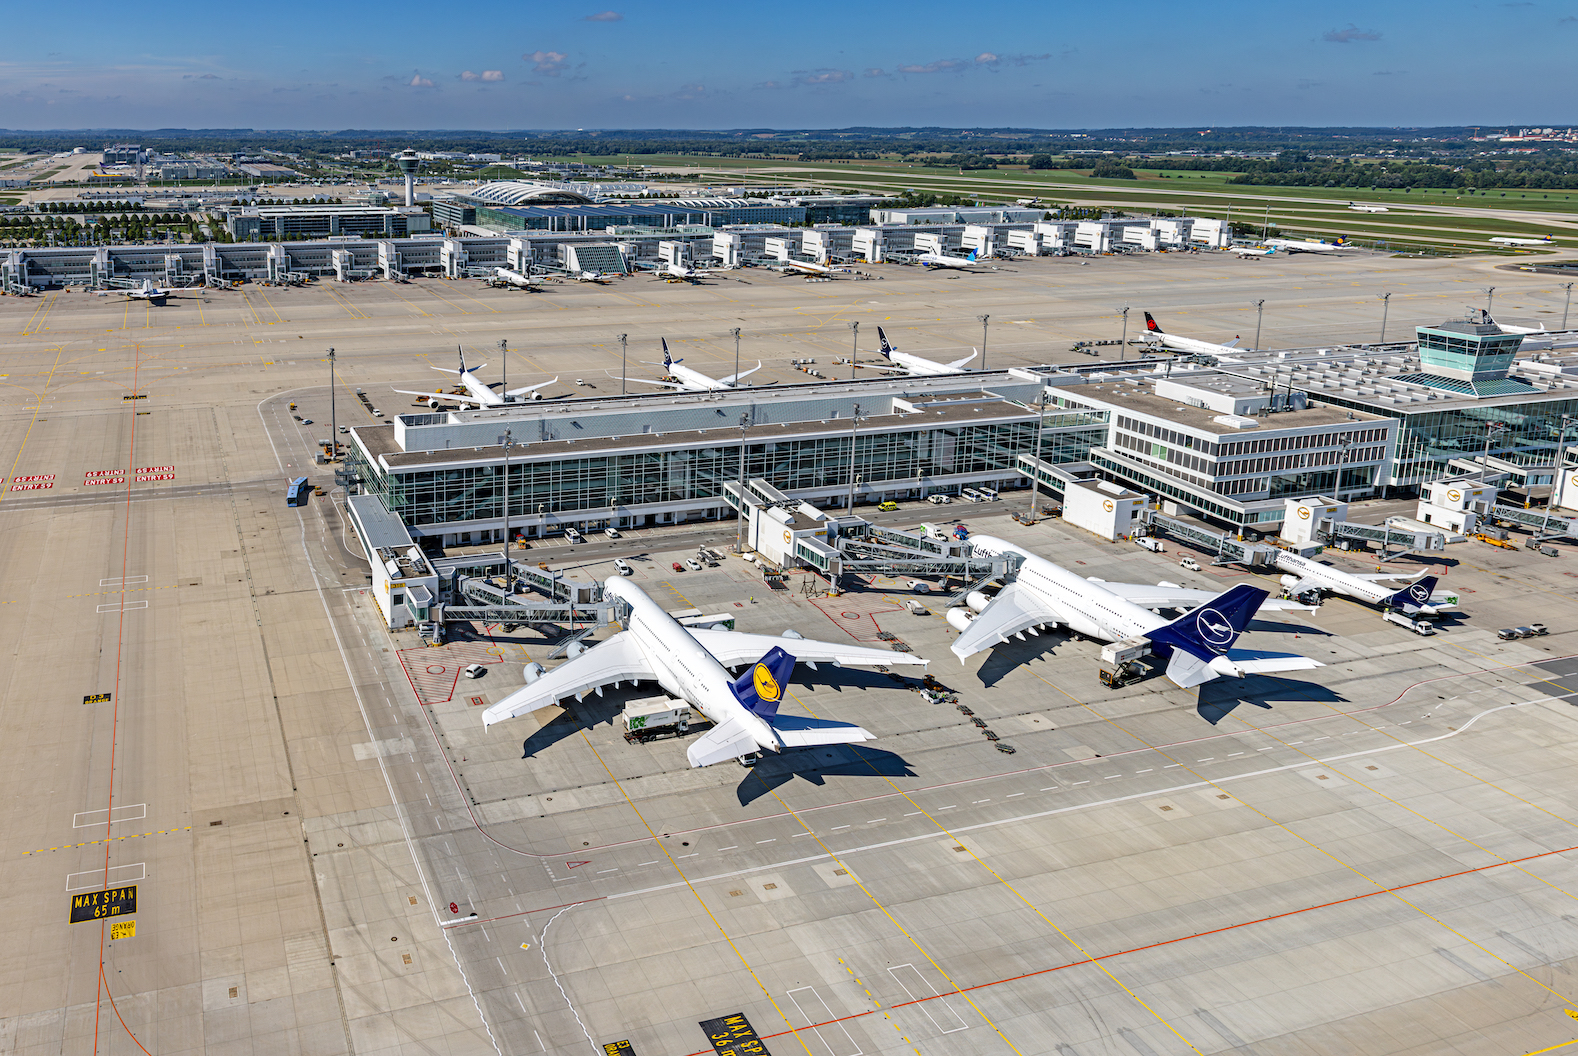 Flughafen München erhält zum vierten Mal in Folge "5-Star"-Auszeichnung